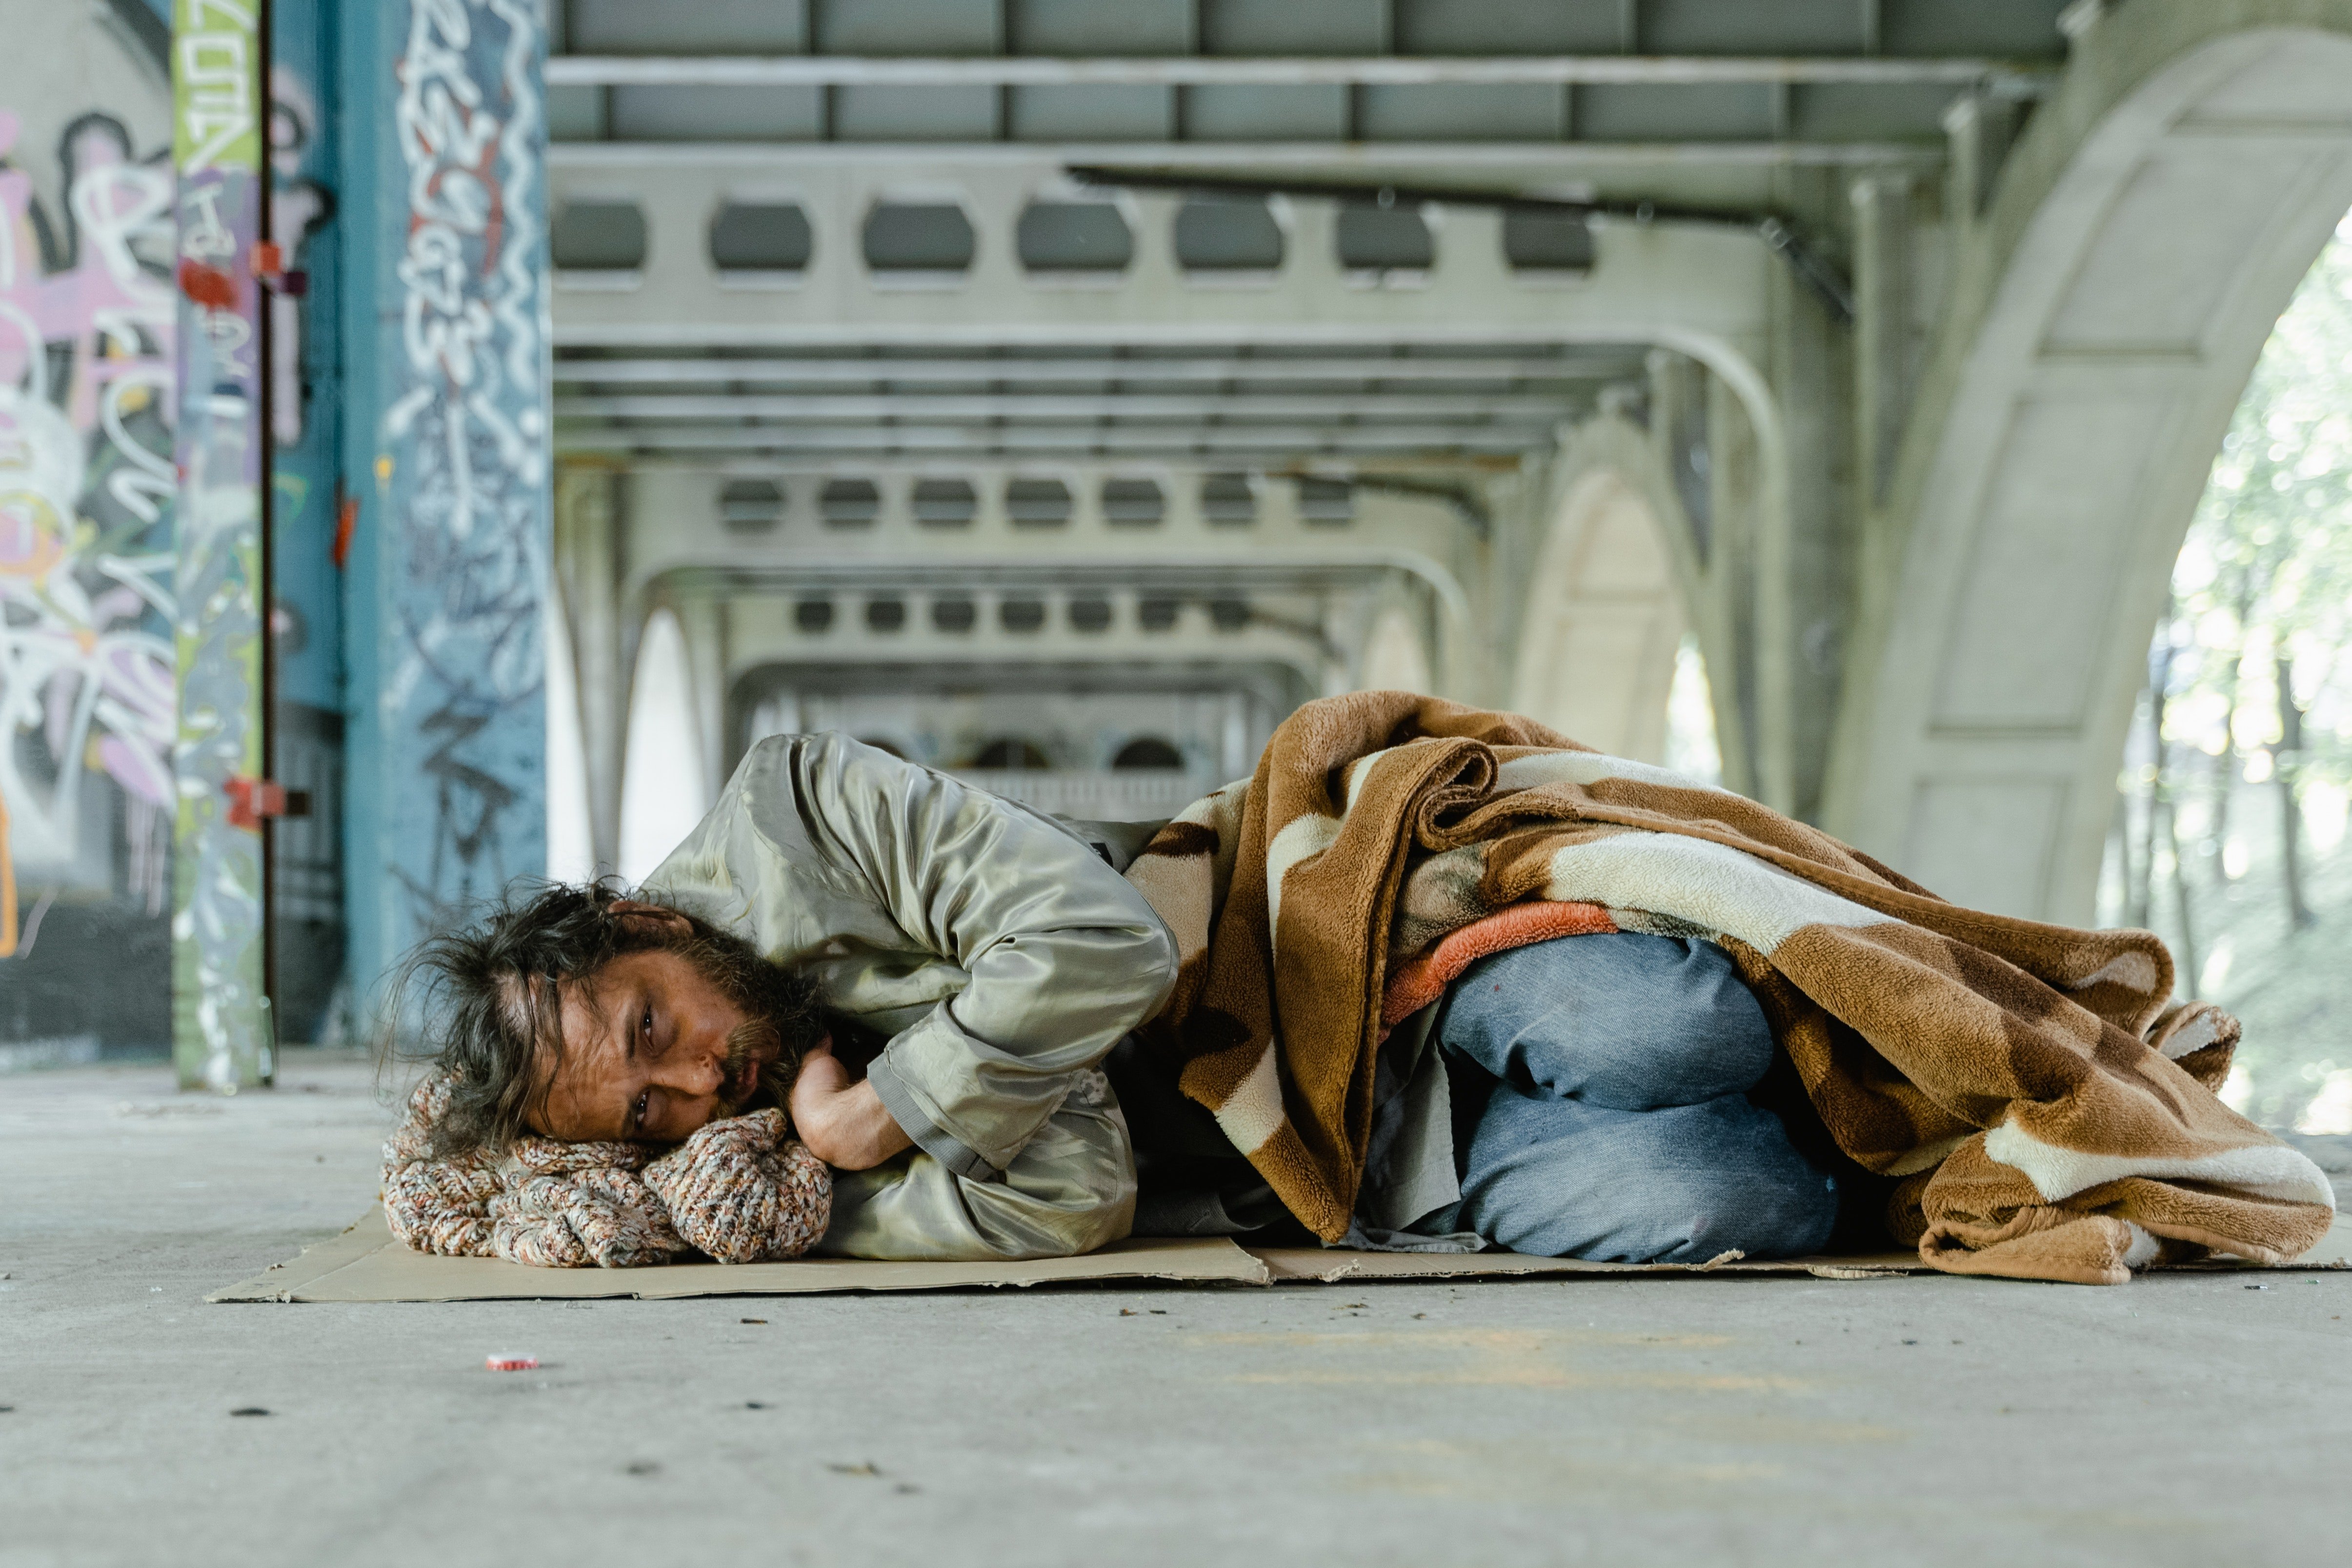 Erics Herz schmerzte für den obdachlosen Mann. | Quelle: Pexels